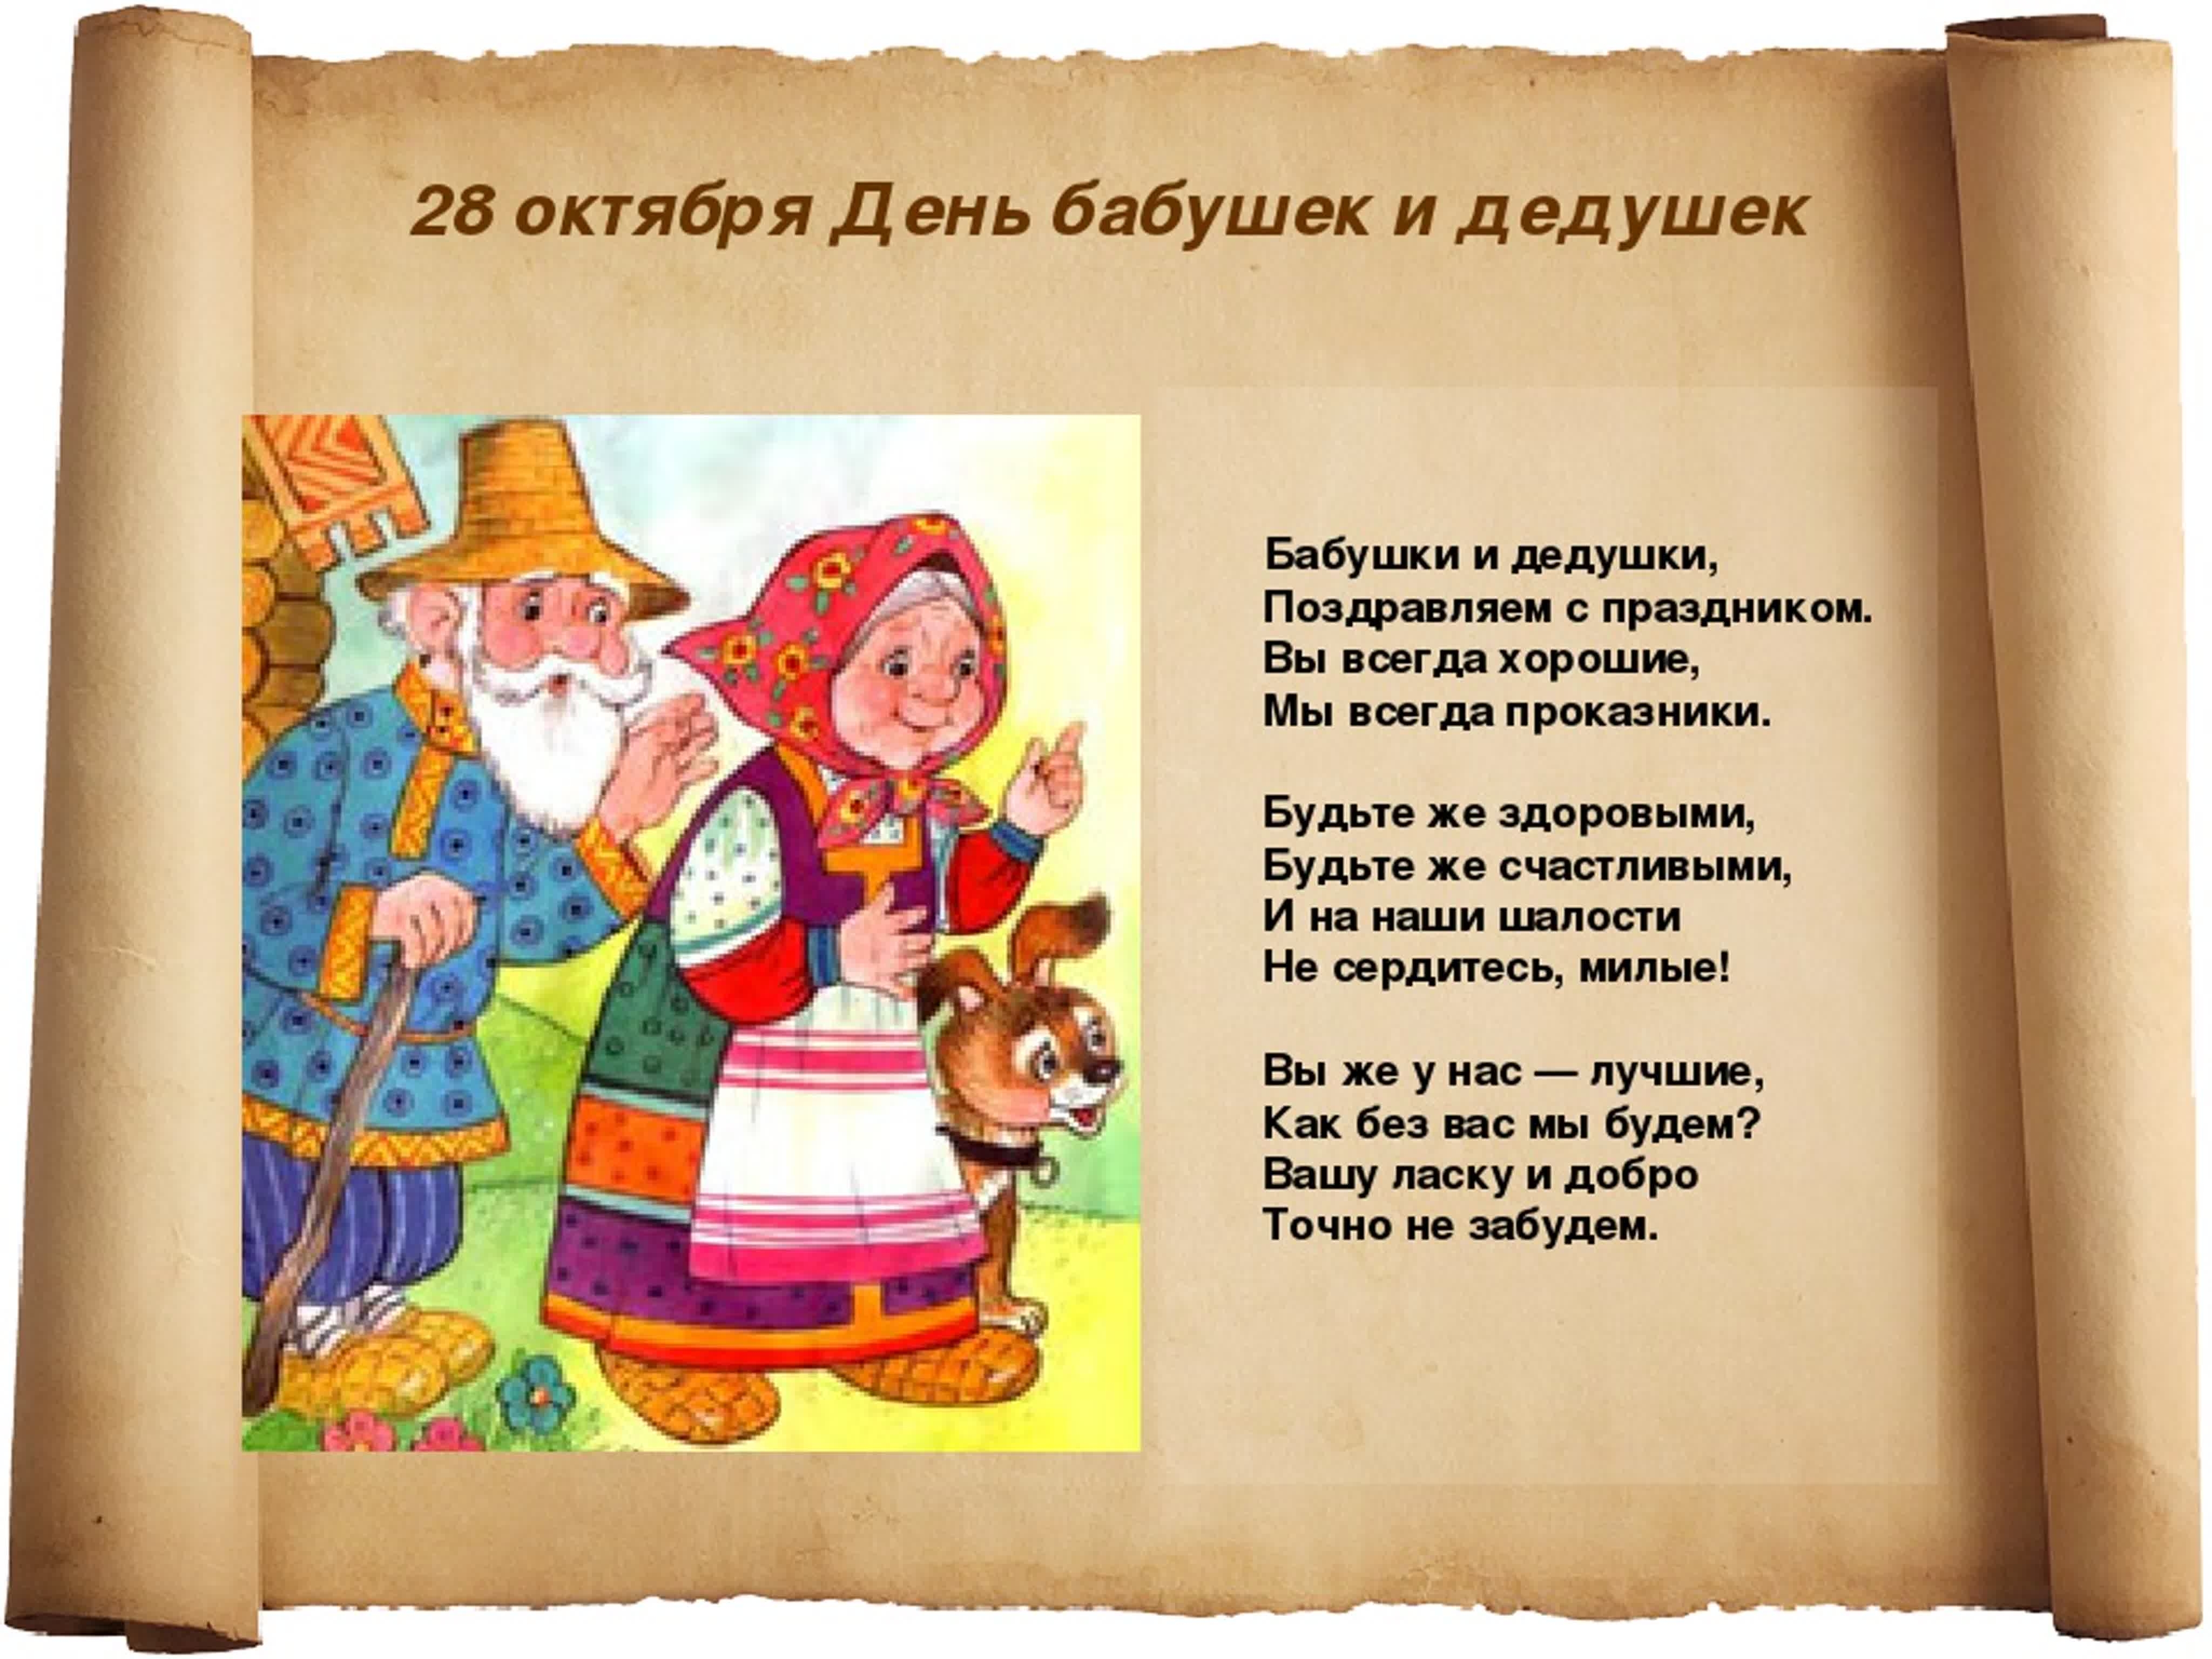 Когда день бабушек в беларуси. 28 Октября праздник бабушек. День бабушек и дедушек в России. Поздравление бабушек и дедушек. 28 Октября день бабушек и дедушек поздравления.